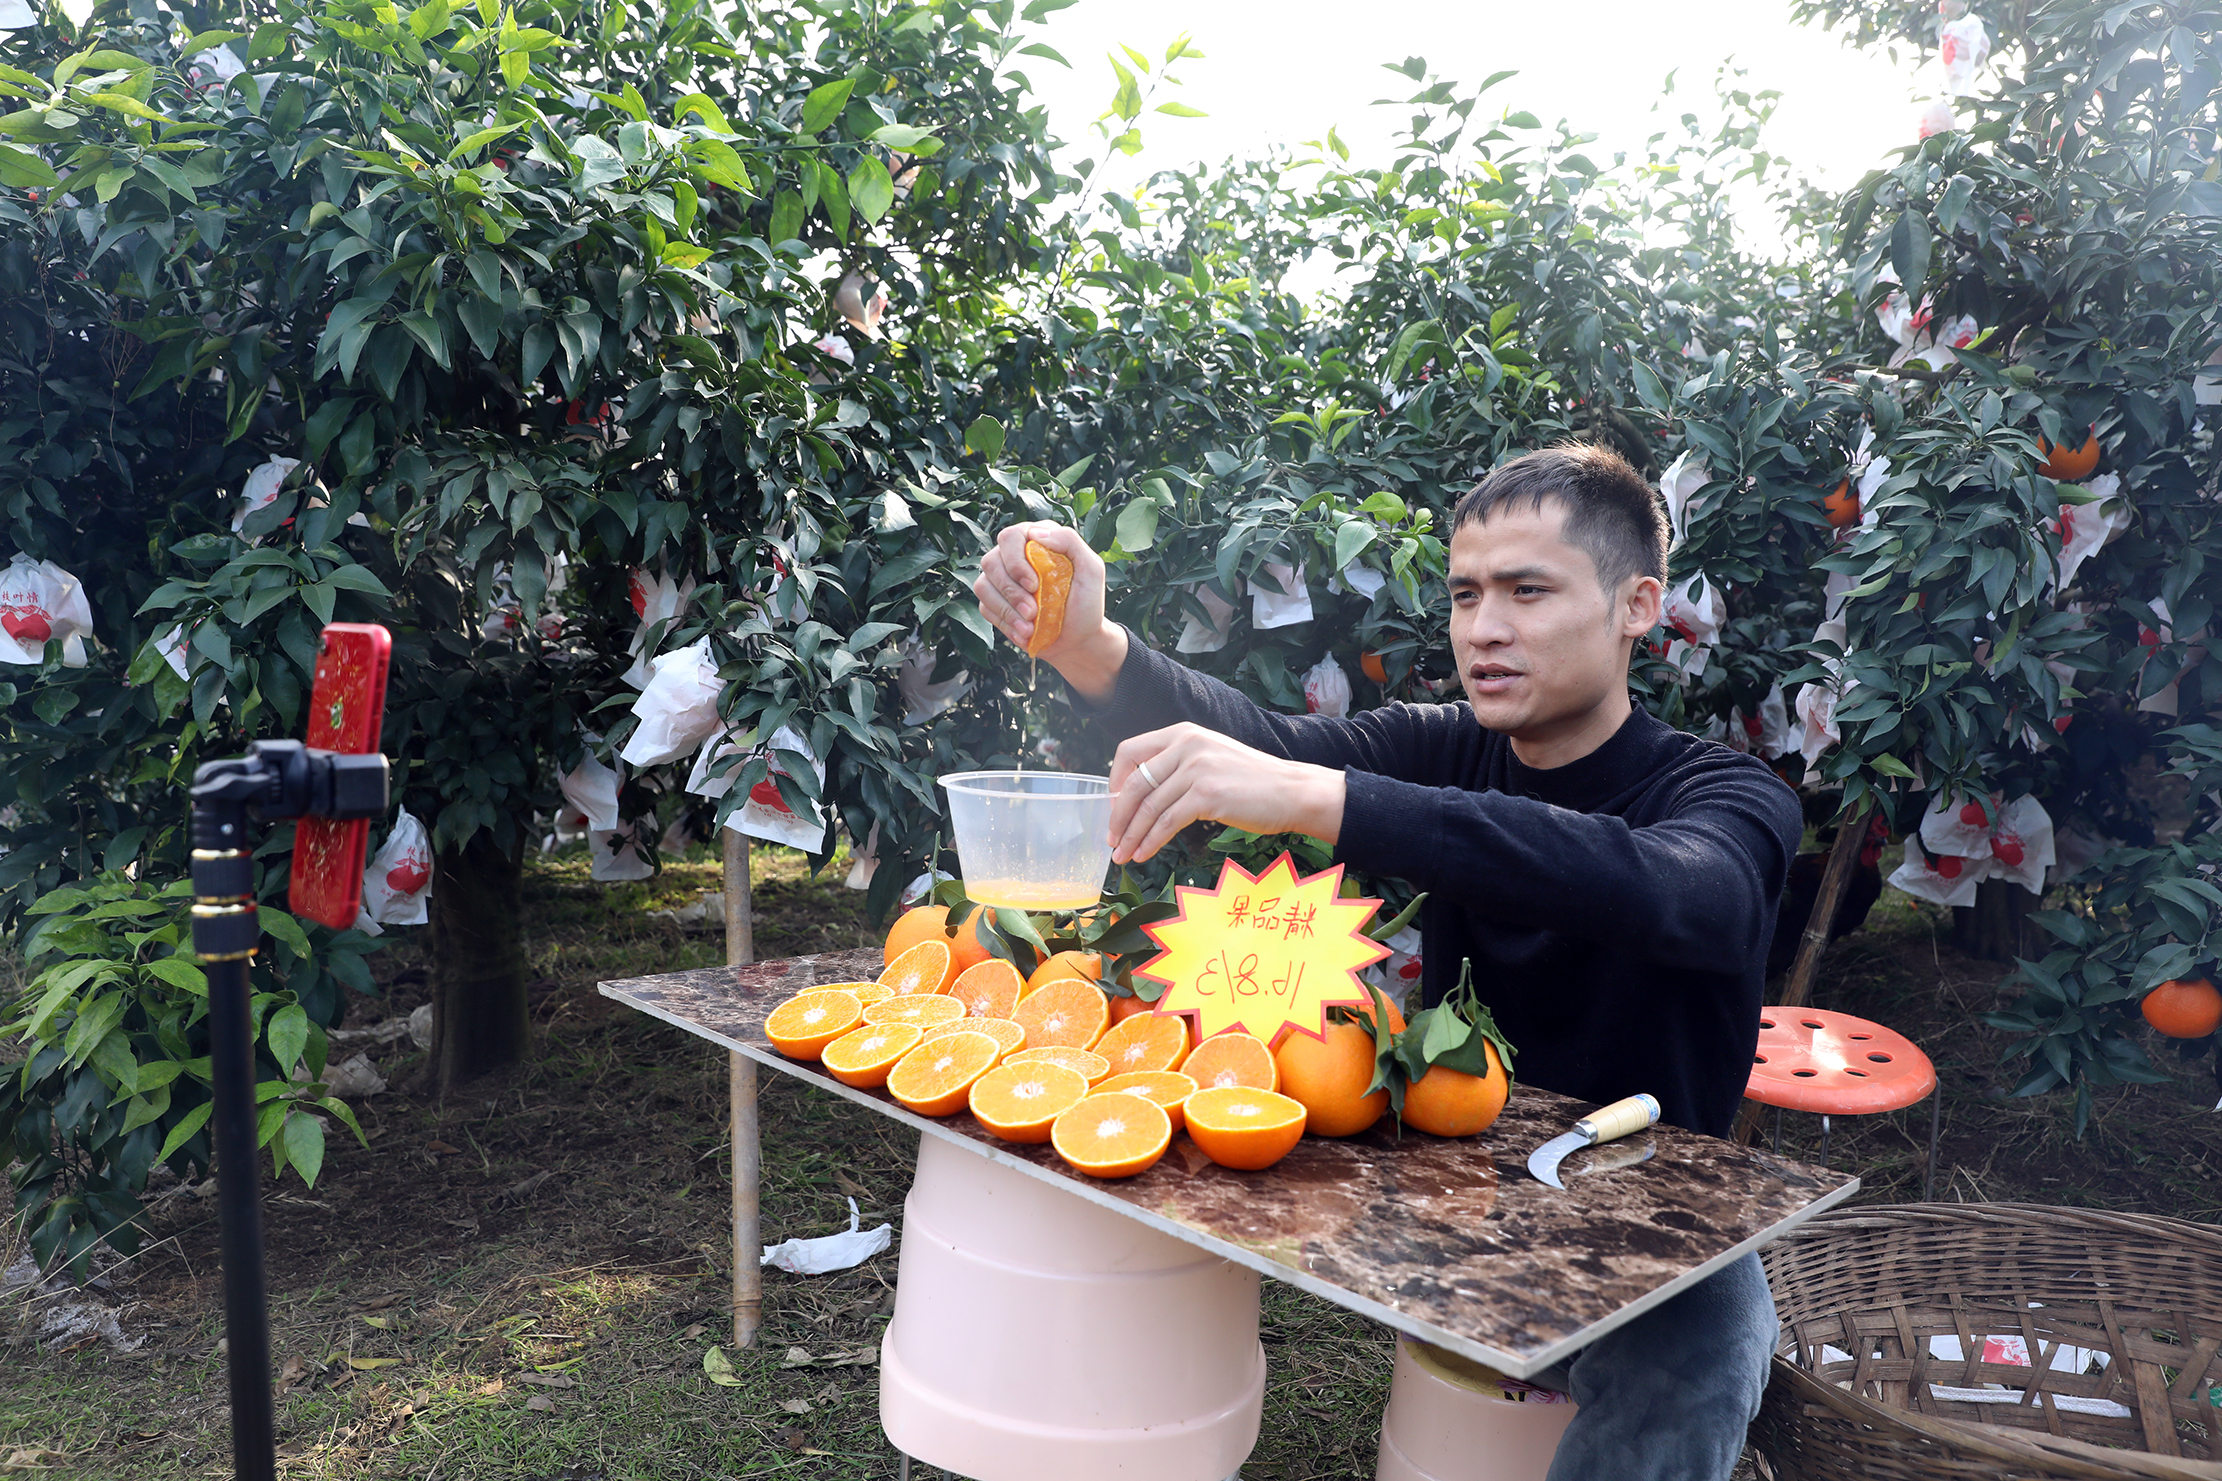  红石村将电商作为柑橘销售重点发展方向。